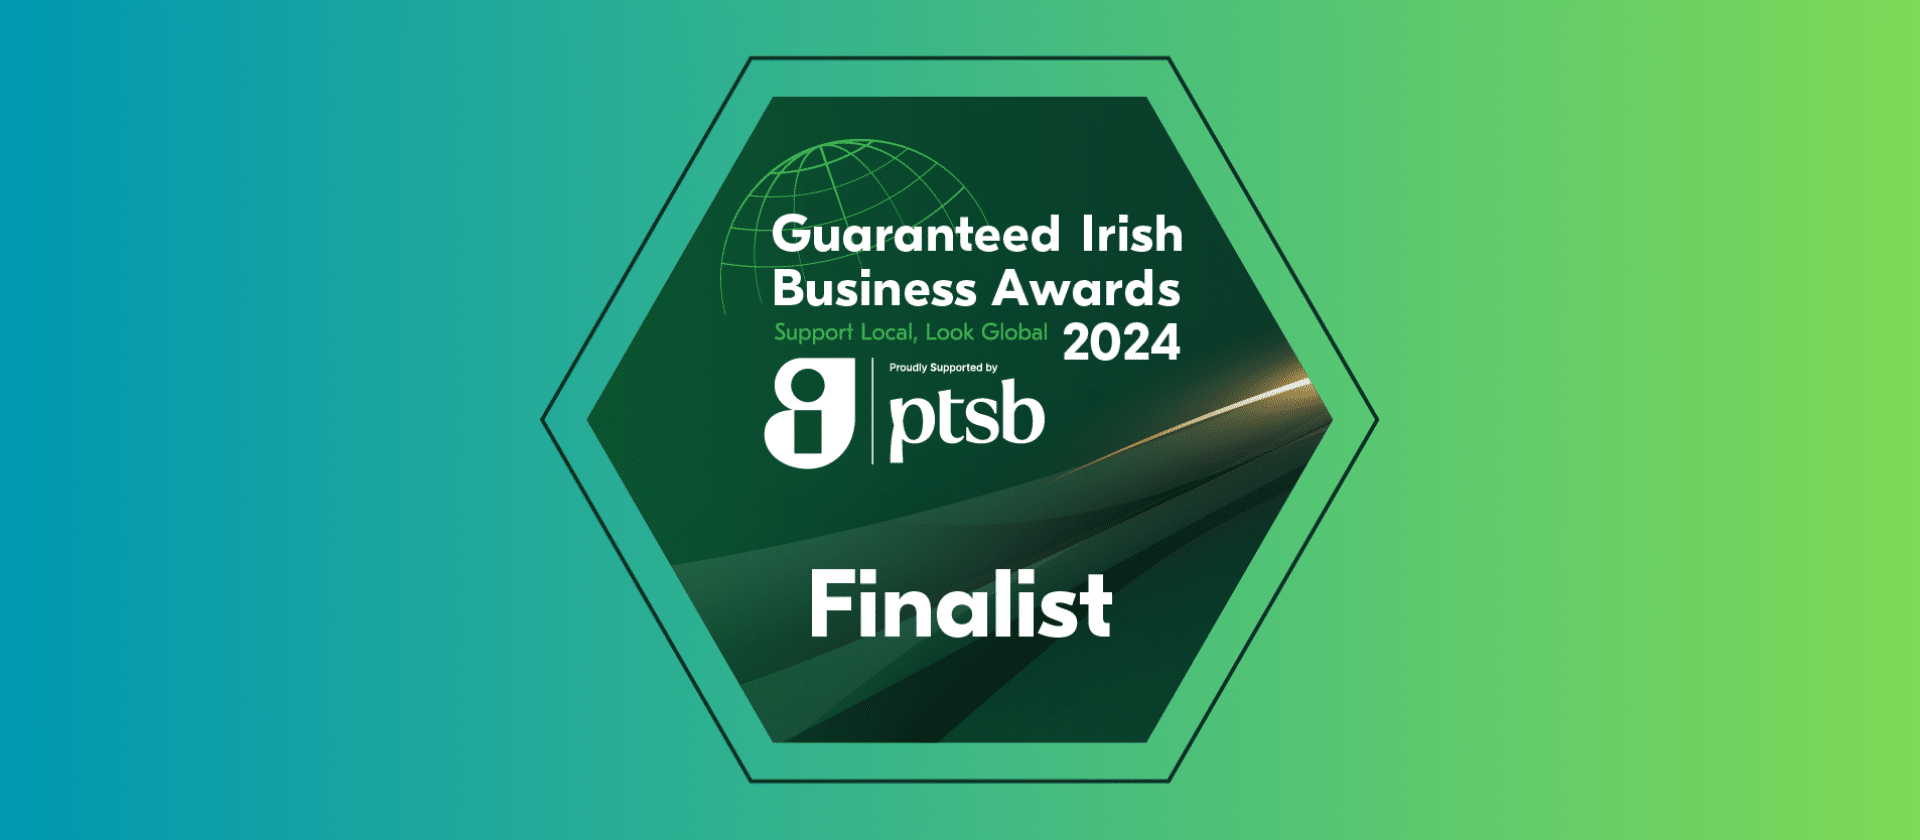 Finalist in Guaranteed Irish Business Awards 2024